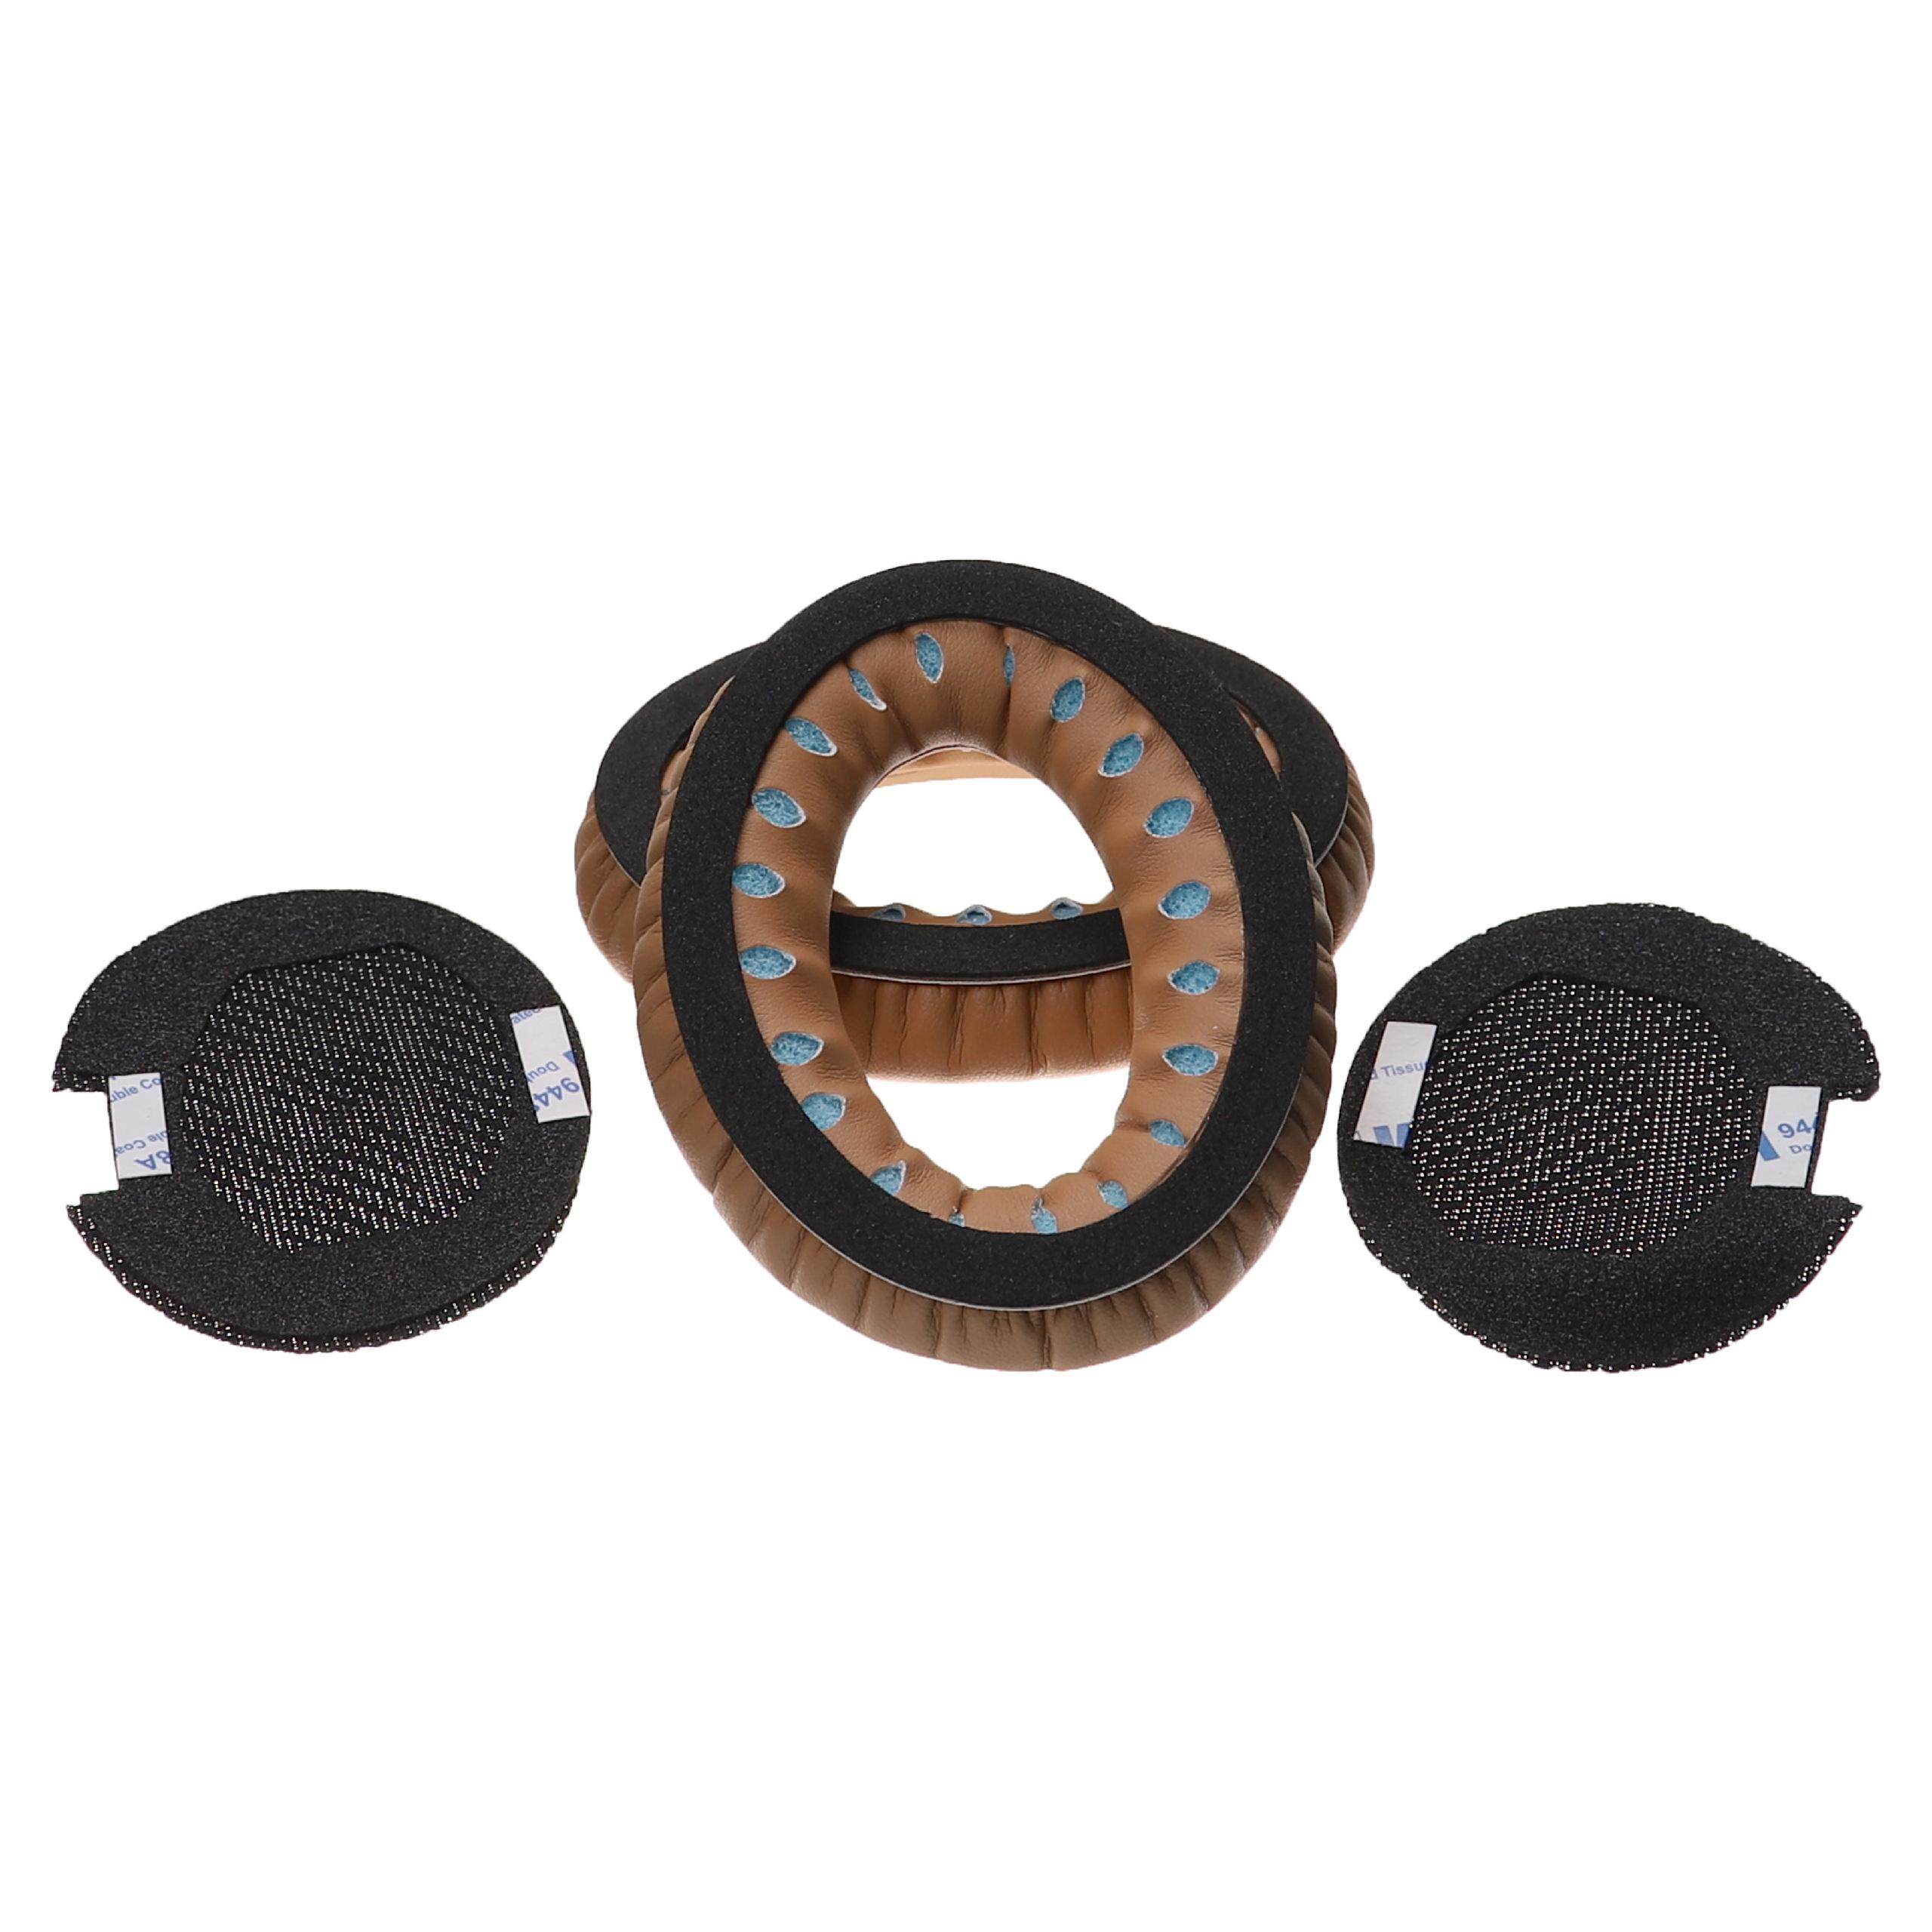 Ohrenpolster passend für Bose AE2 Kopfhörer u.a. - Mit Memory-Schaum, Weiches Material, 9,5 x 7,5 cm, 41 mm st